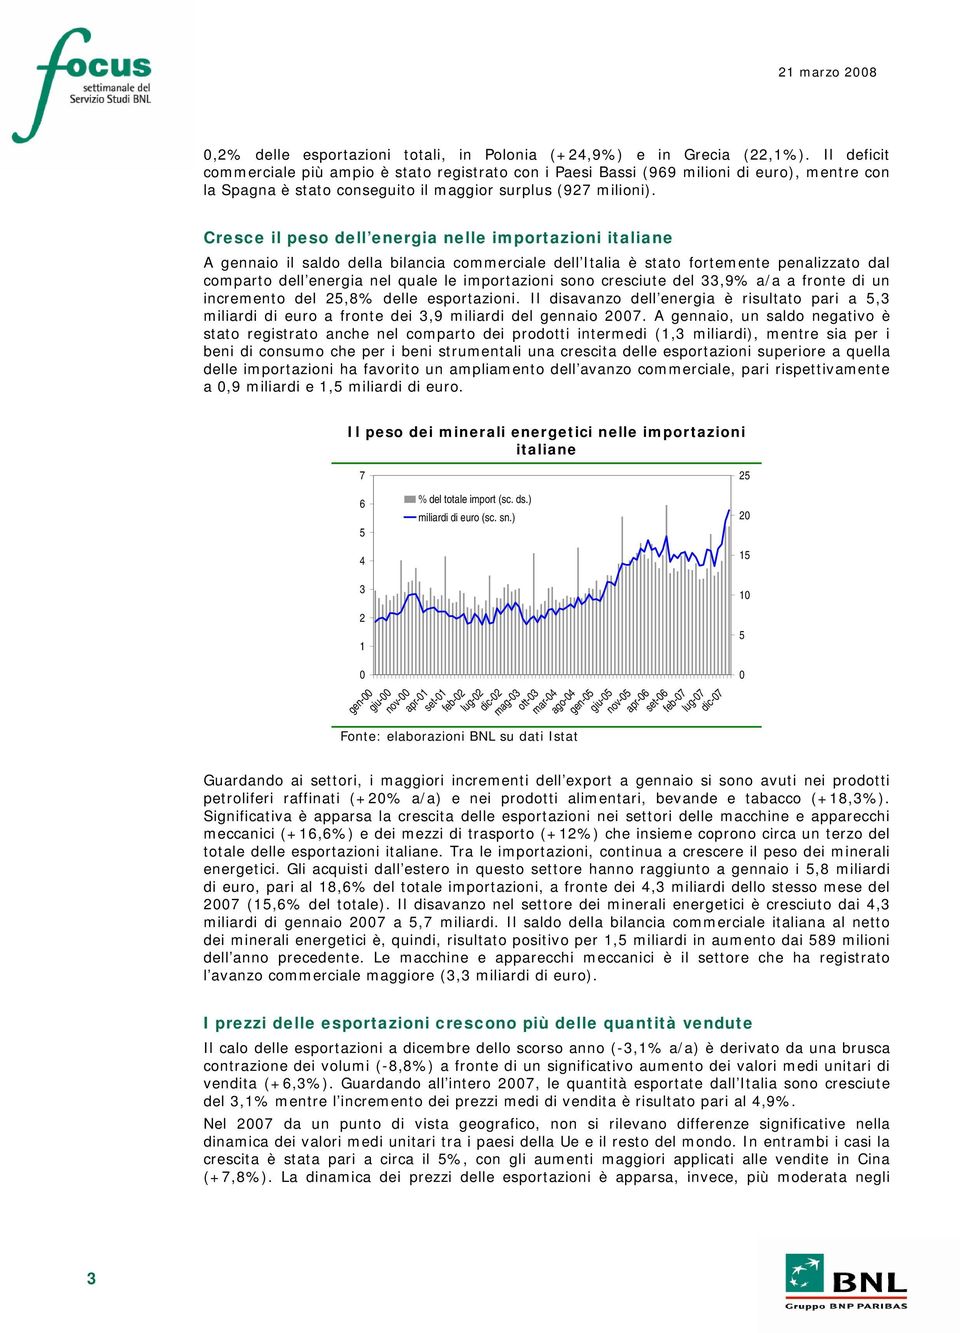 Cresce il peso dell energia nelle importazioni italiane A gennaio il saldo della bilancia commerciale dell Italia è stato fortemente penalizzato dal comparto dell energia nel quale le importazioni